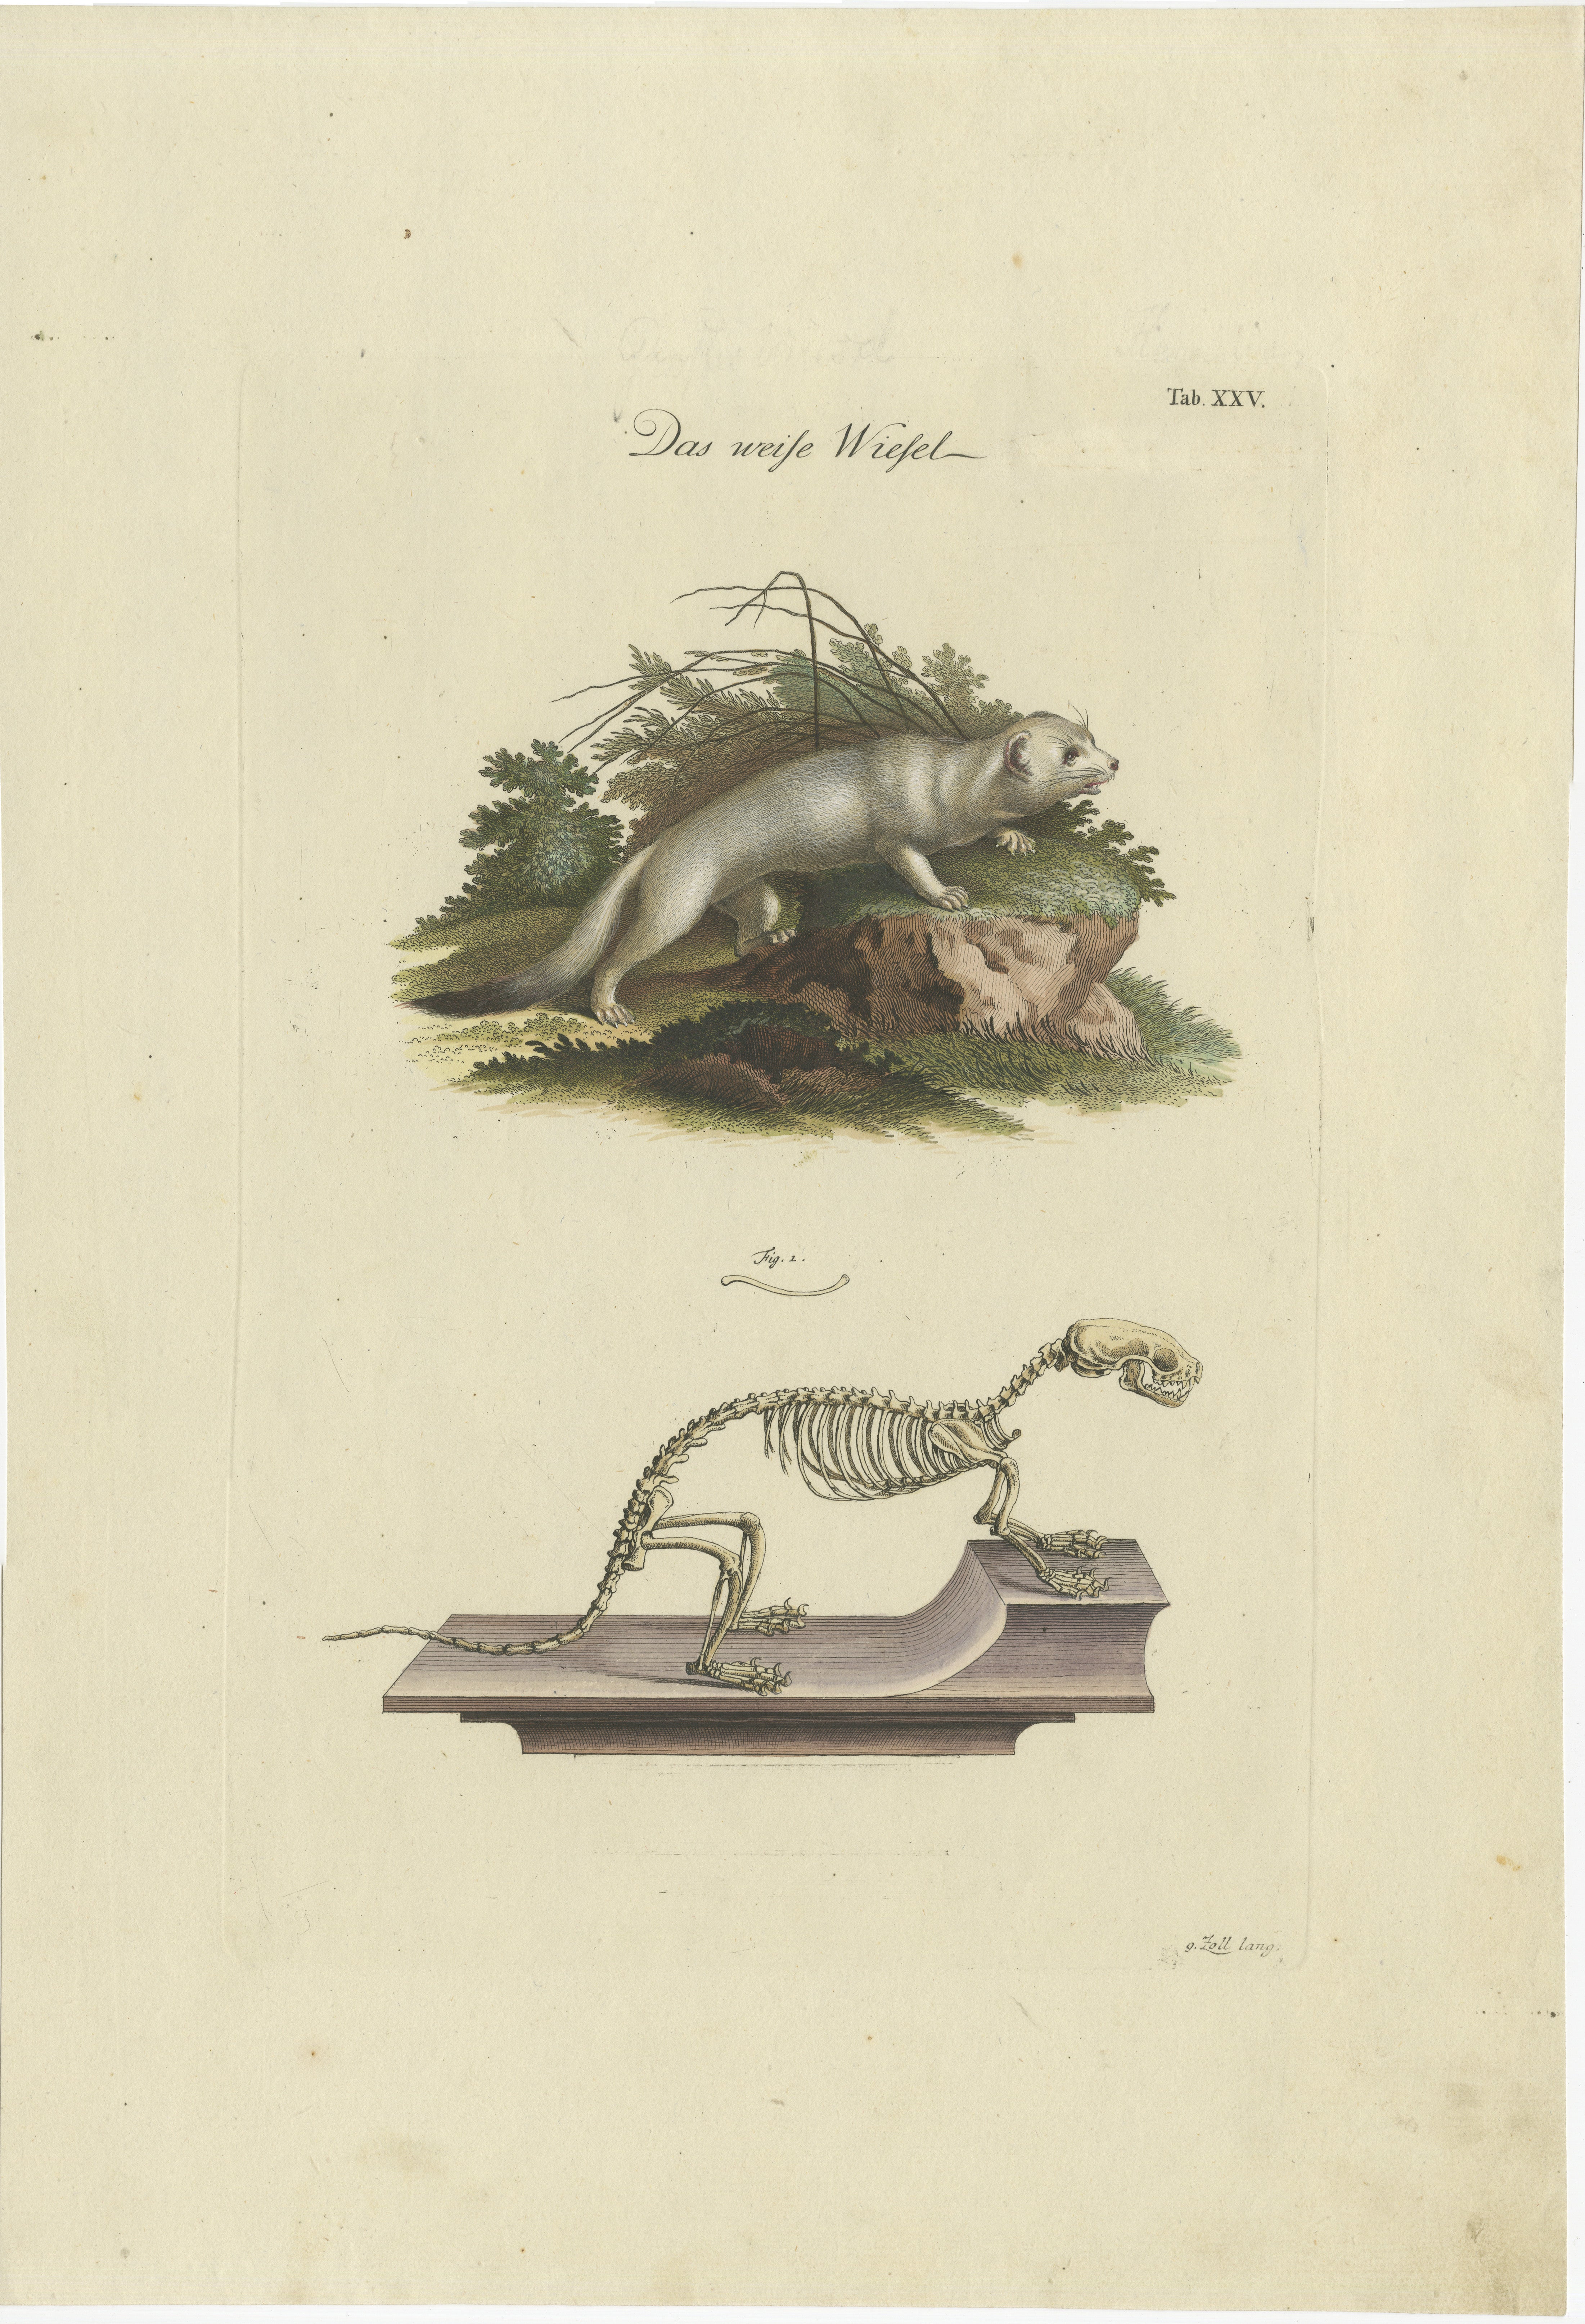 Cette gravure ancienne originale d'assez grande taille sur papier fort représente deux images : l'une d'une belette dans son habitat naturel et l'autre de son squelette. 

Le titre allemand 